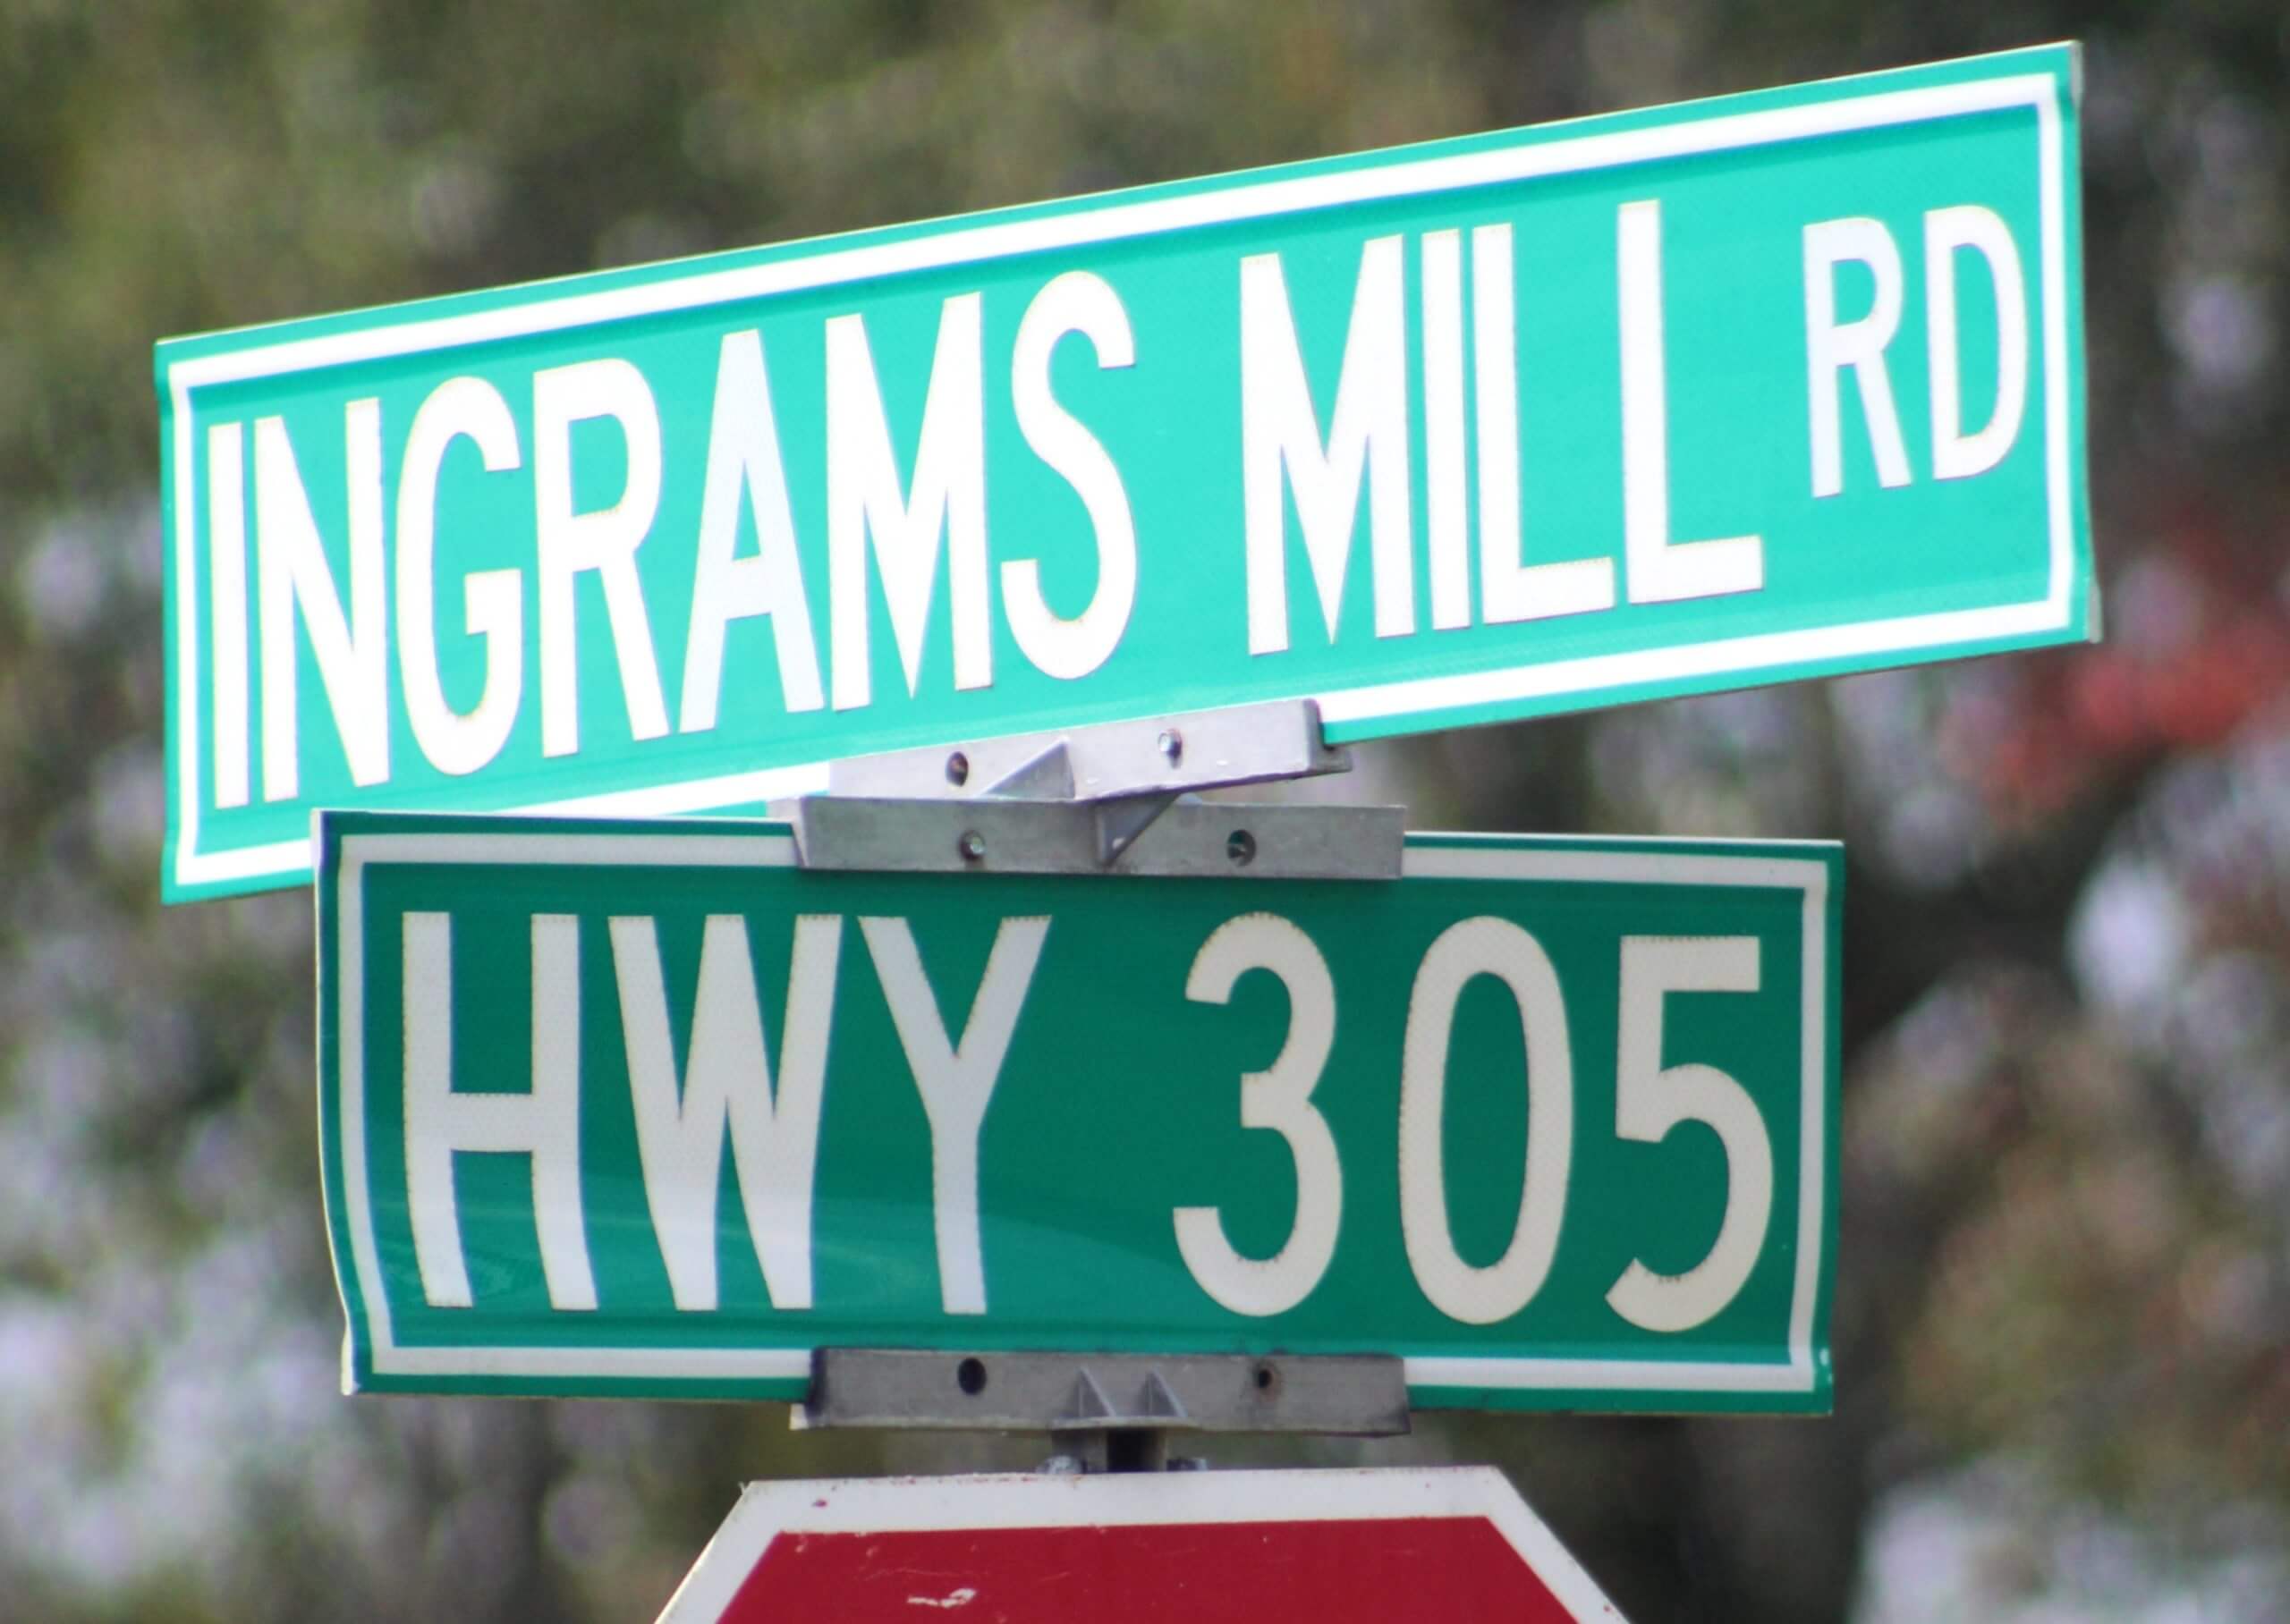 Bridge repair means Ingrams Mill Road closure